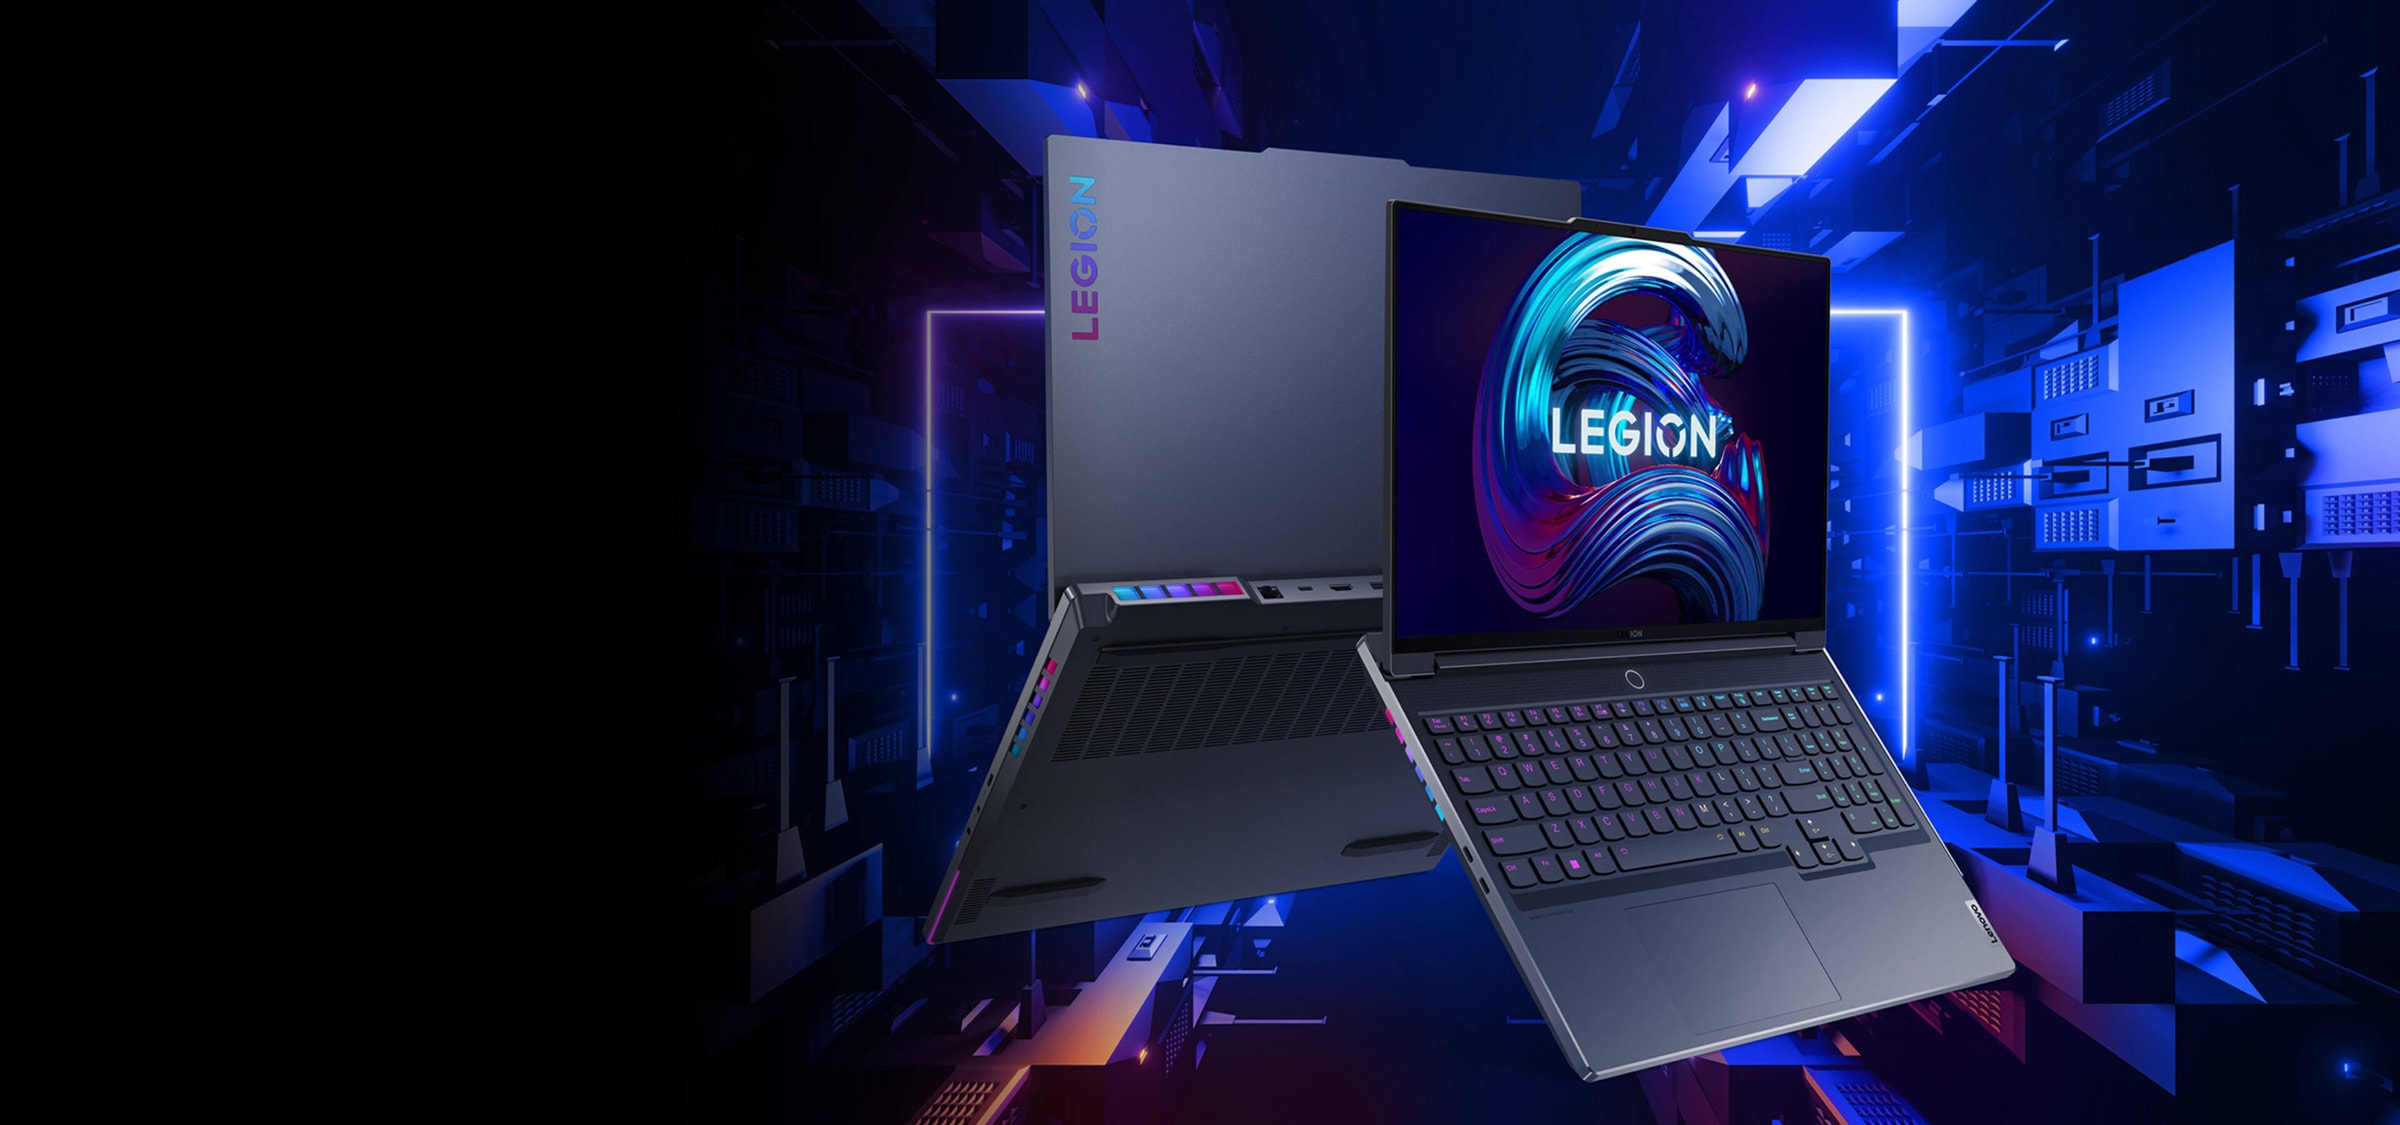 Игровой ноутбук Lenovo Legion 7, вид спереди с открытой на 135 градусов крышкой. Ноутбук наклонен вперед для демонстрации экрана дисплея и клавиатуры и повернут в сторону для показа портов и разъемов с левой стороны и зеркального отображения задней панели.